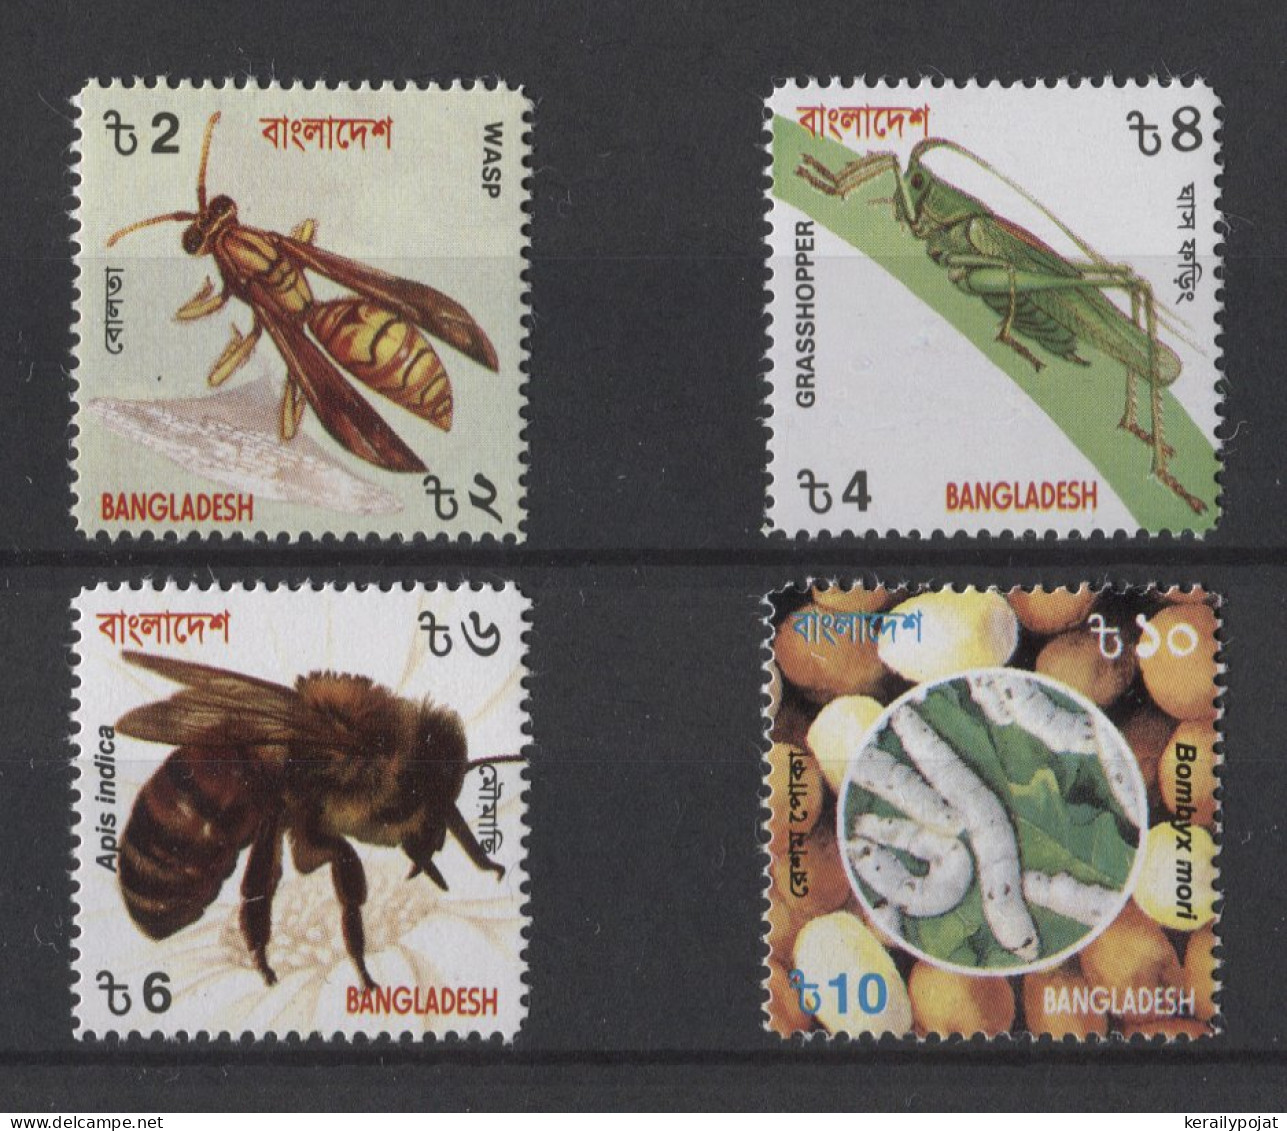 Bangladesh - 2000 Native Insects MNH__(TH-24779) - Bangladesh